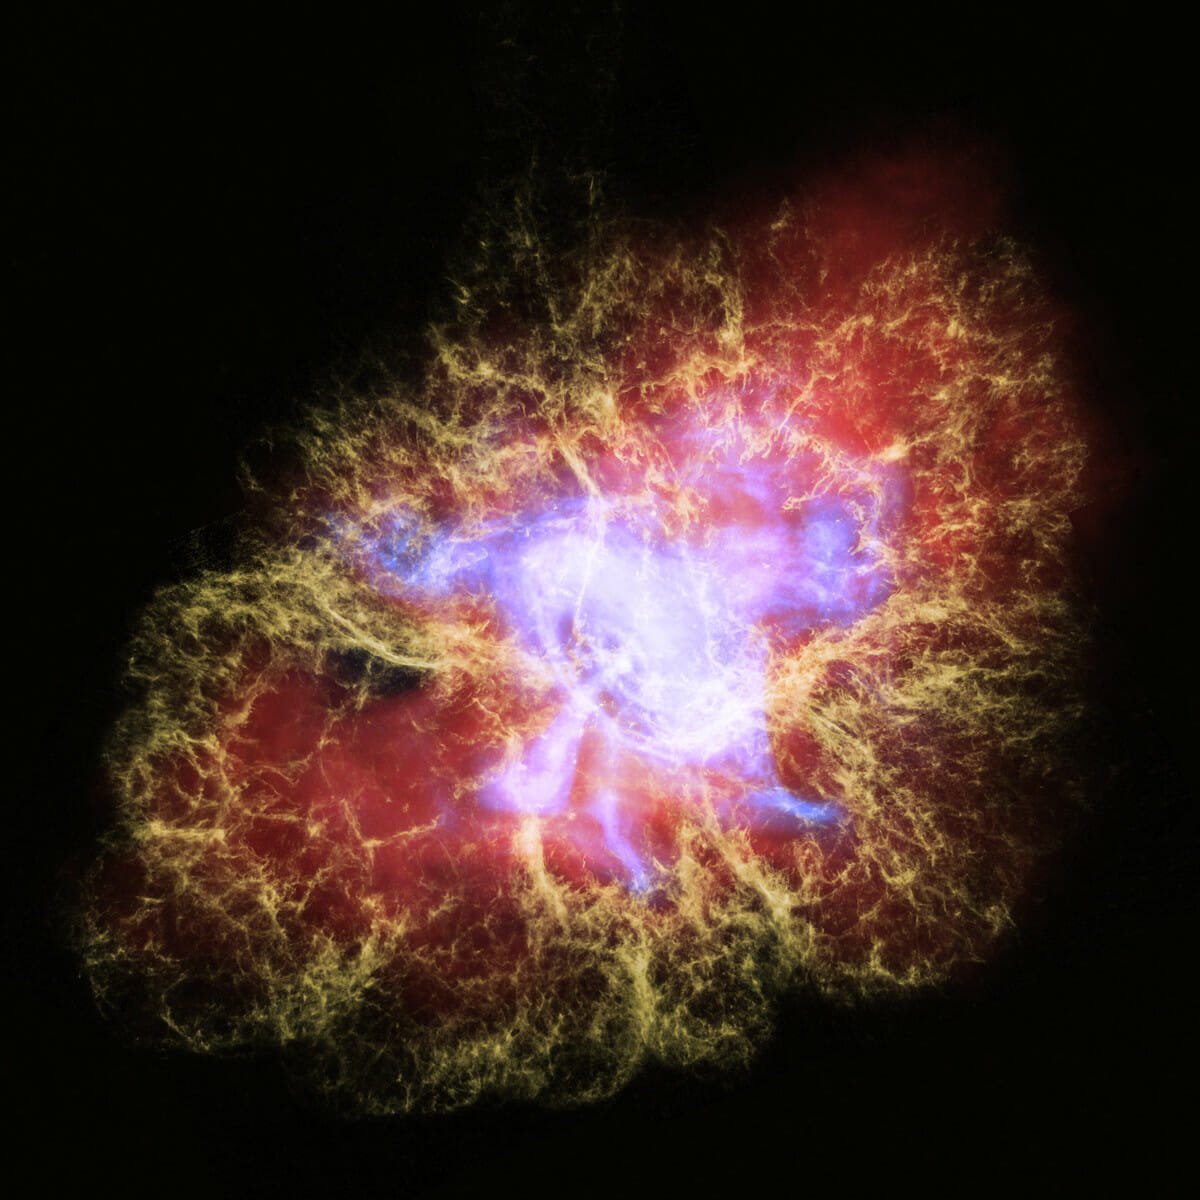 「かに星雲」1054年に観測された超新星の残骸【今日の宇宙画像】